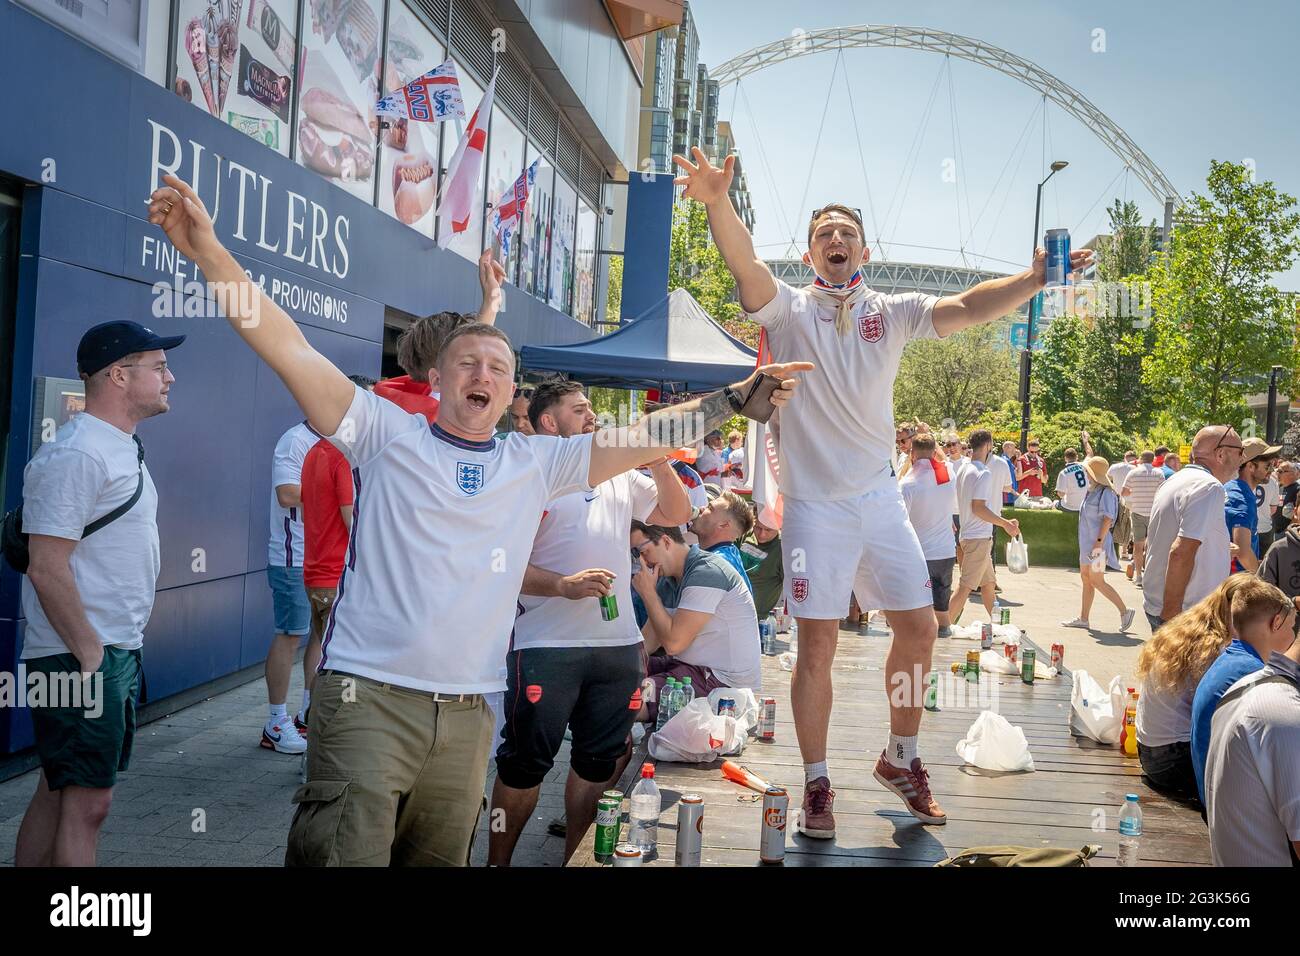 Euro 2020 : les fans arrivent à Wembley dans une ambiance festive prête pour le match Angleterre contre Croatie, European Championships Group D. Londres, Royaume-Uni. Banque D'Images